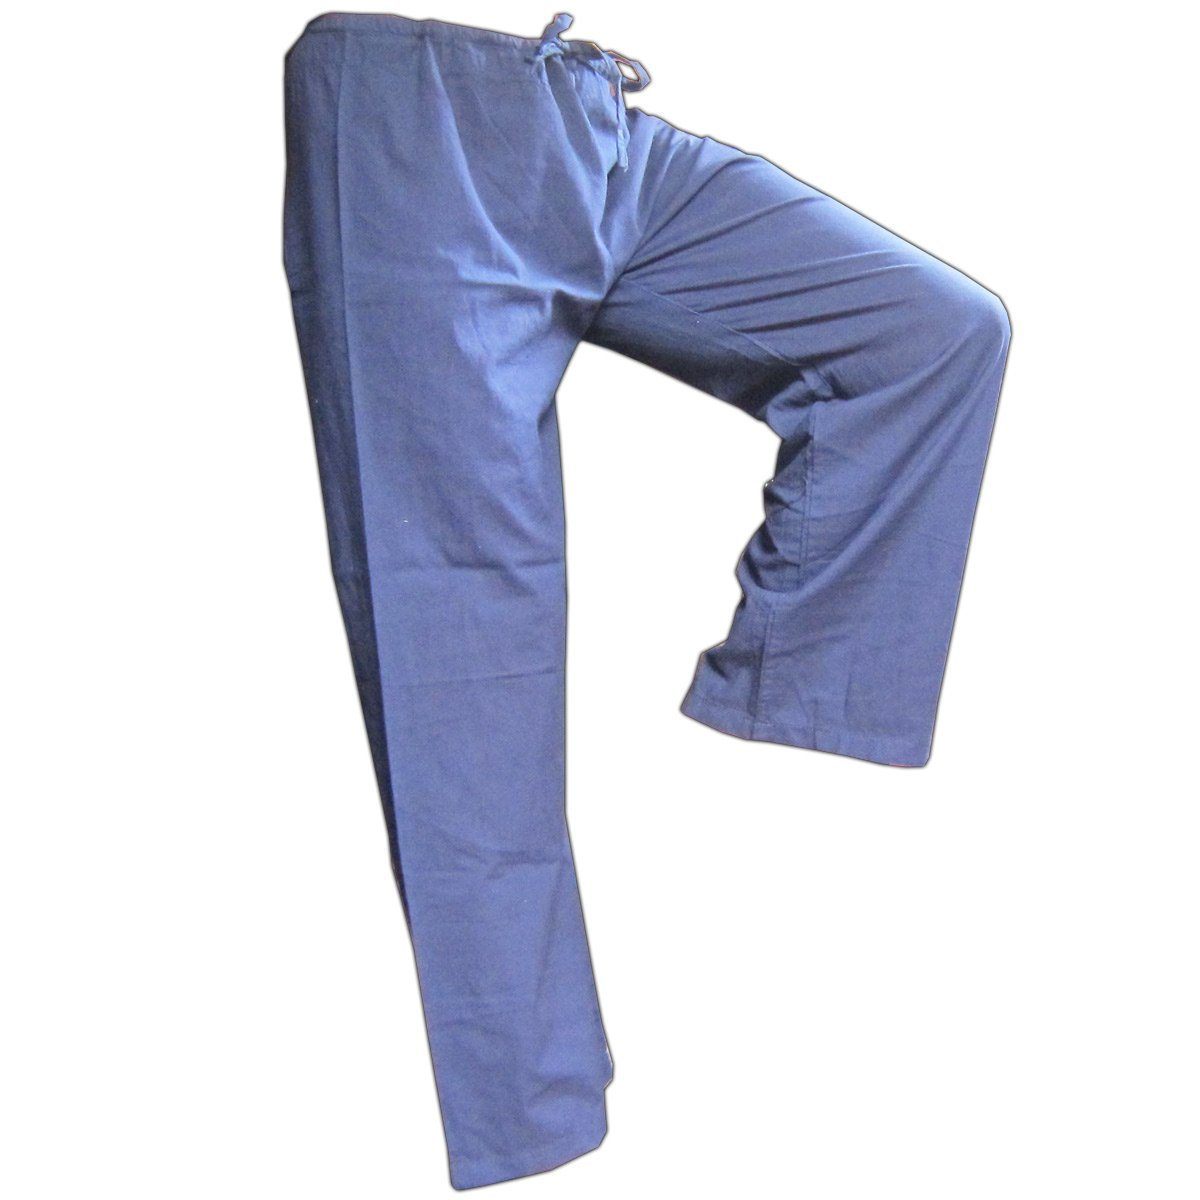 PANASIAM Wellnesshose in für Blau Baumwolle Freizeithose Bequeme Stoffhose Herren aus mit Unisex Relaxhose und Farbauswahl Taschen großer feiner Damen